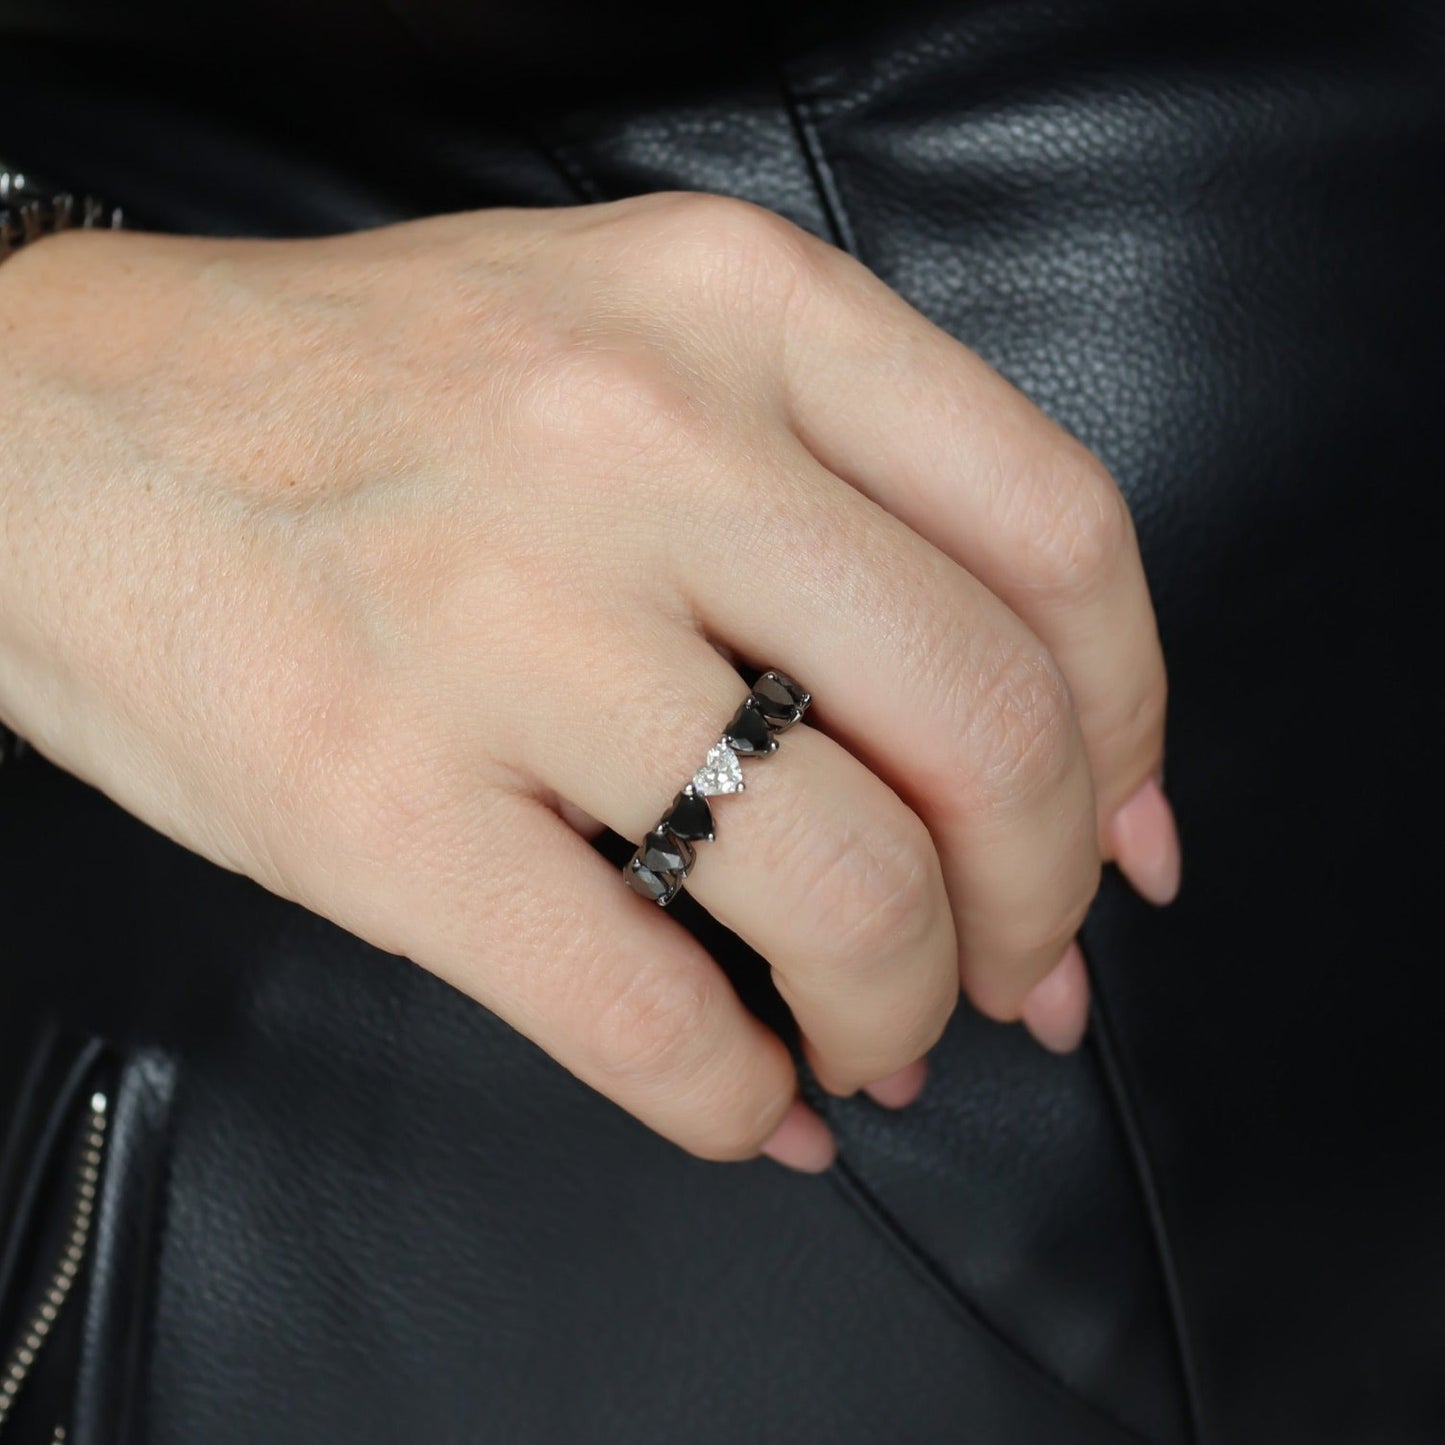 Black & White Diamond Heart Ring